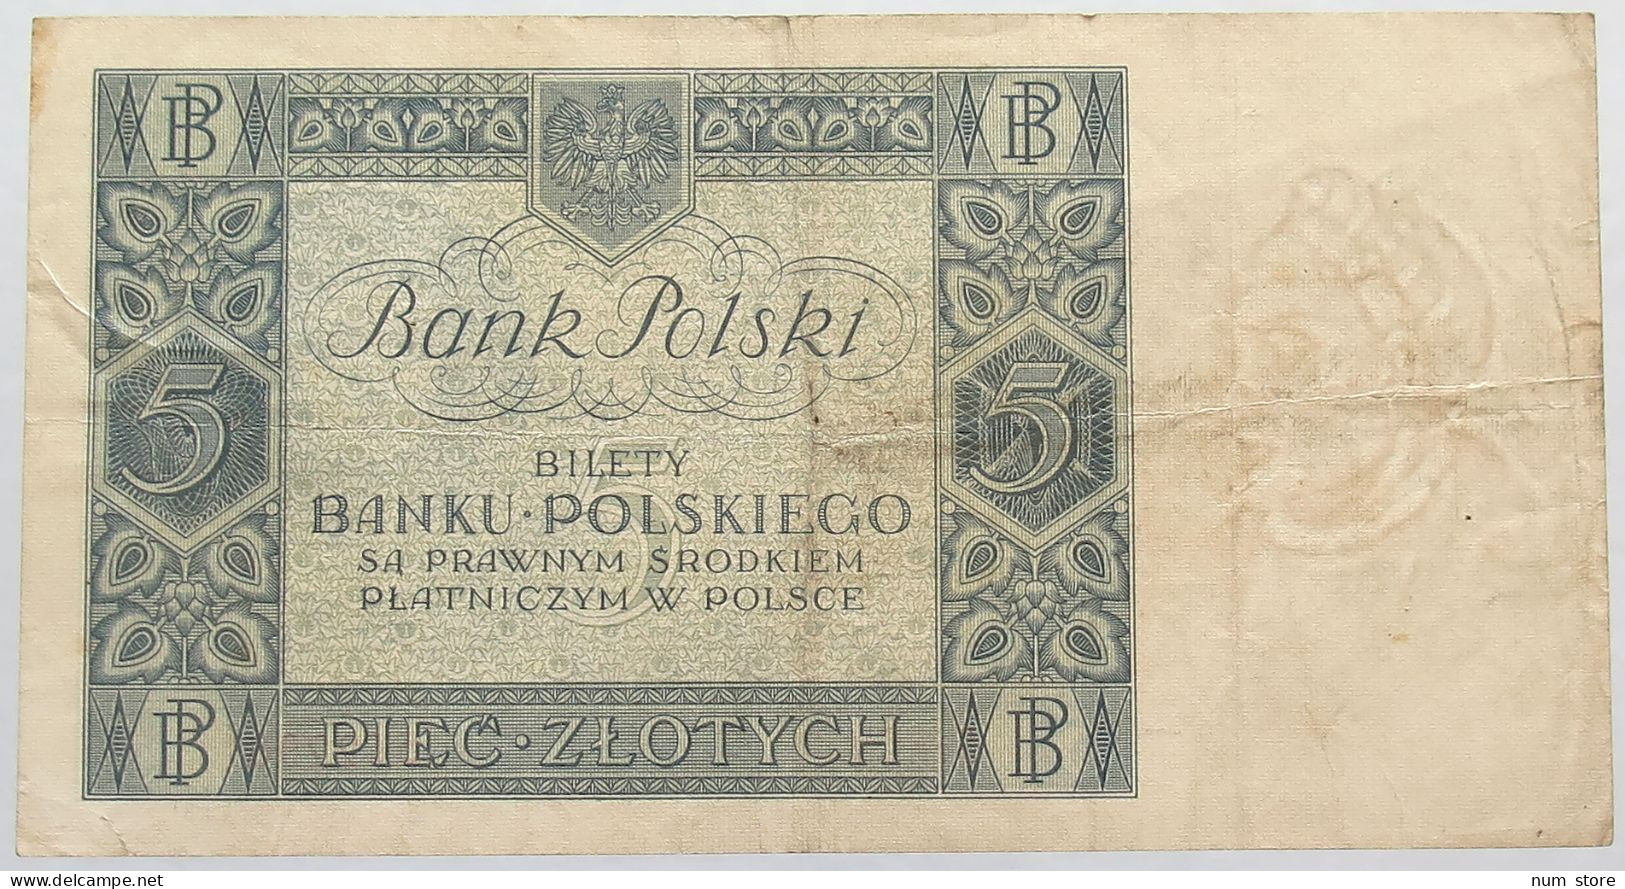 POLAND 5 ZLOTYCH 1930 #alb016 0001 - Pologne